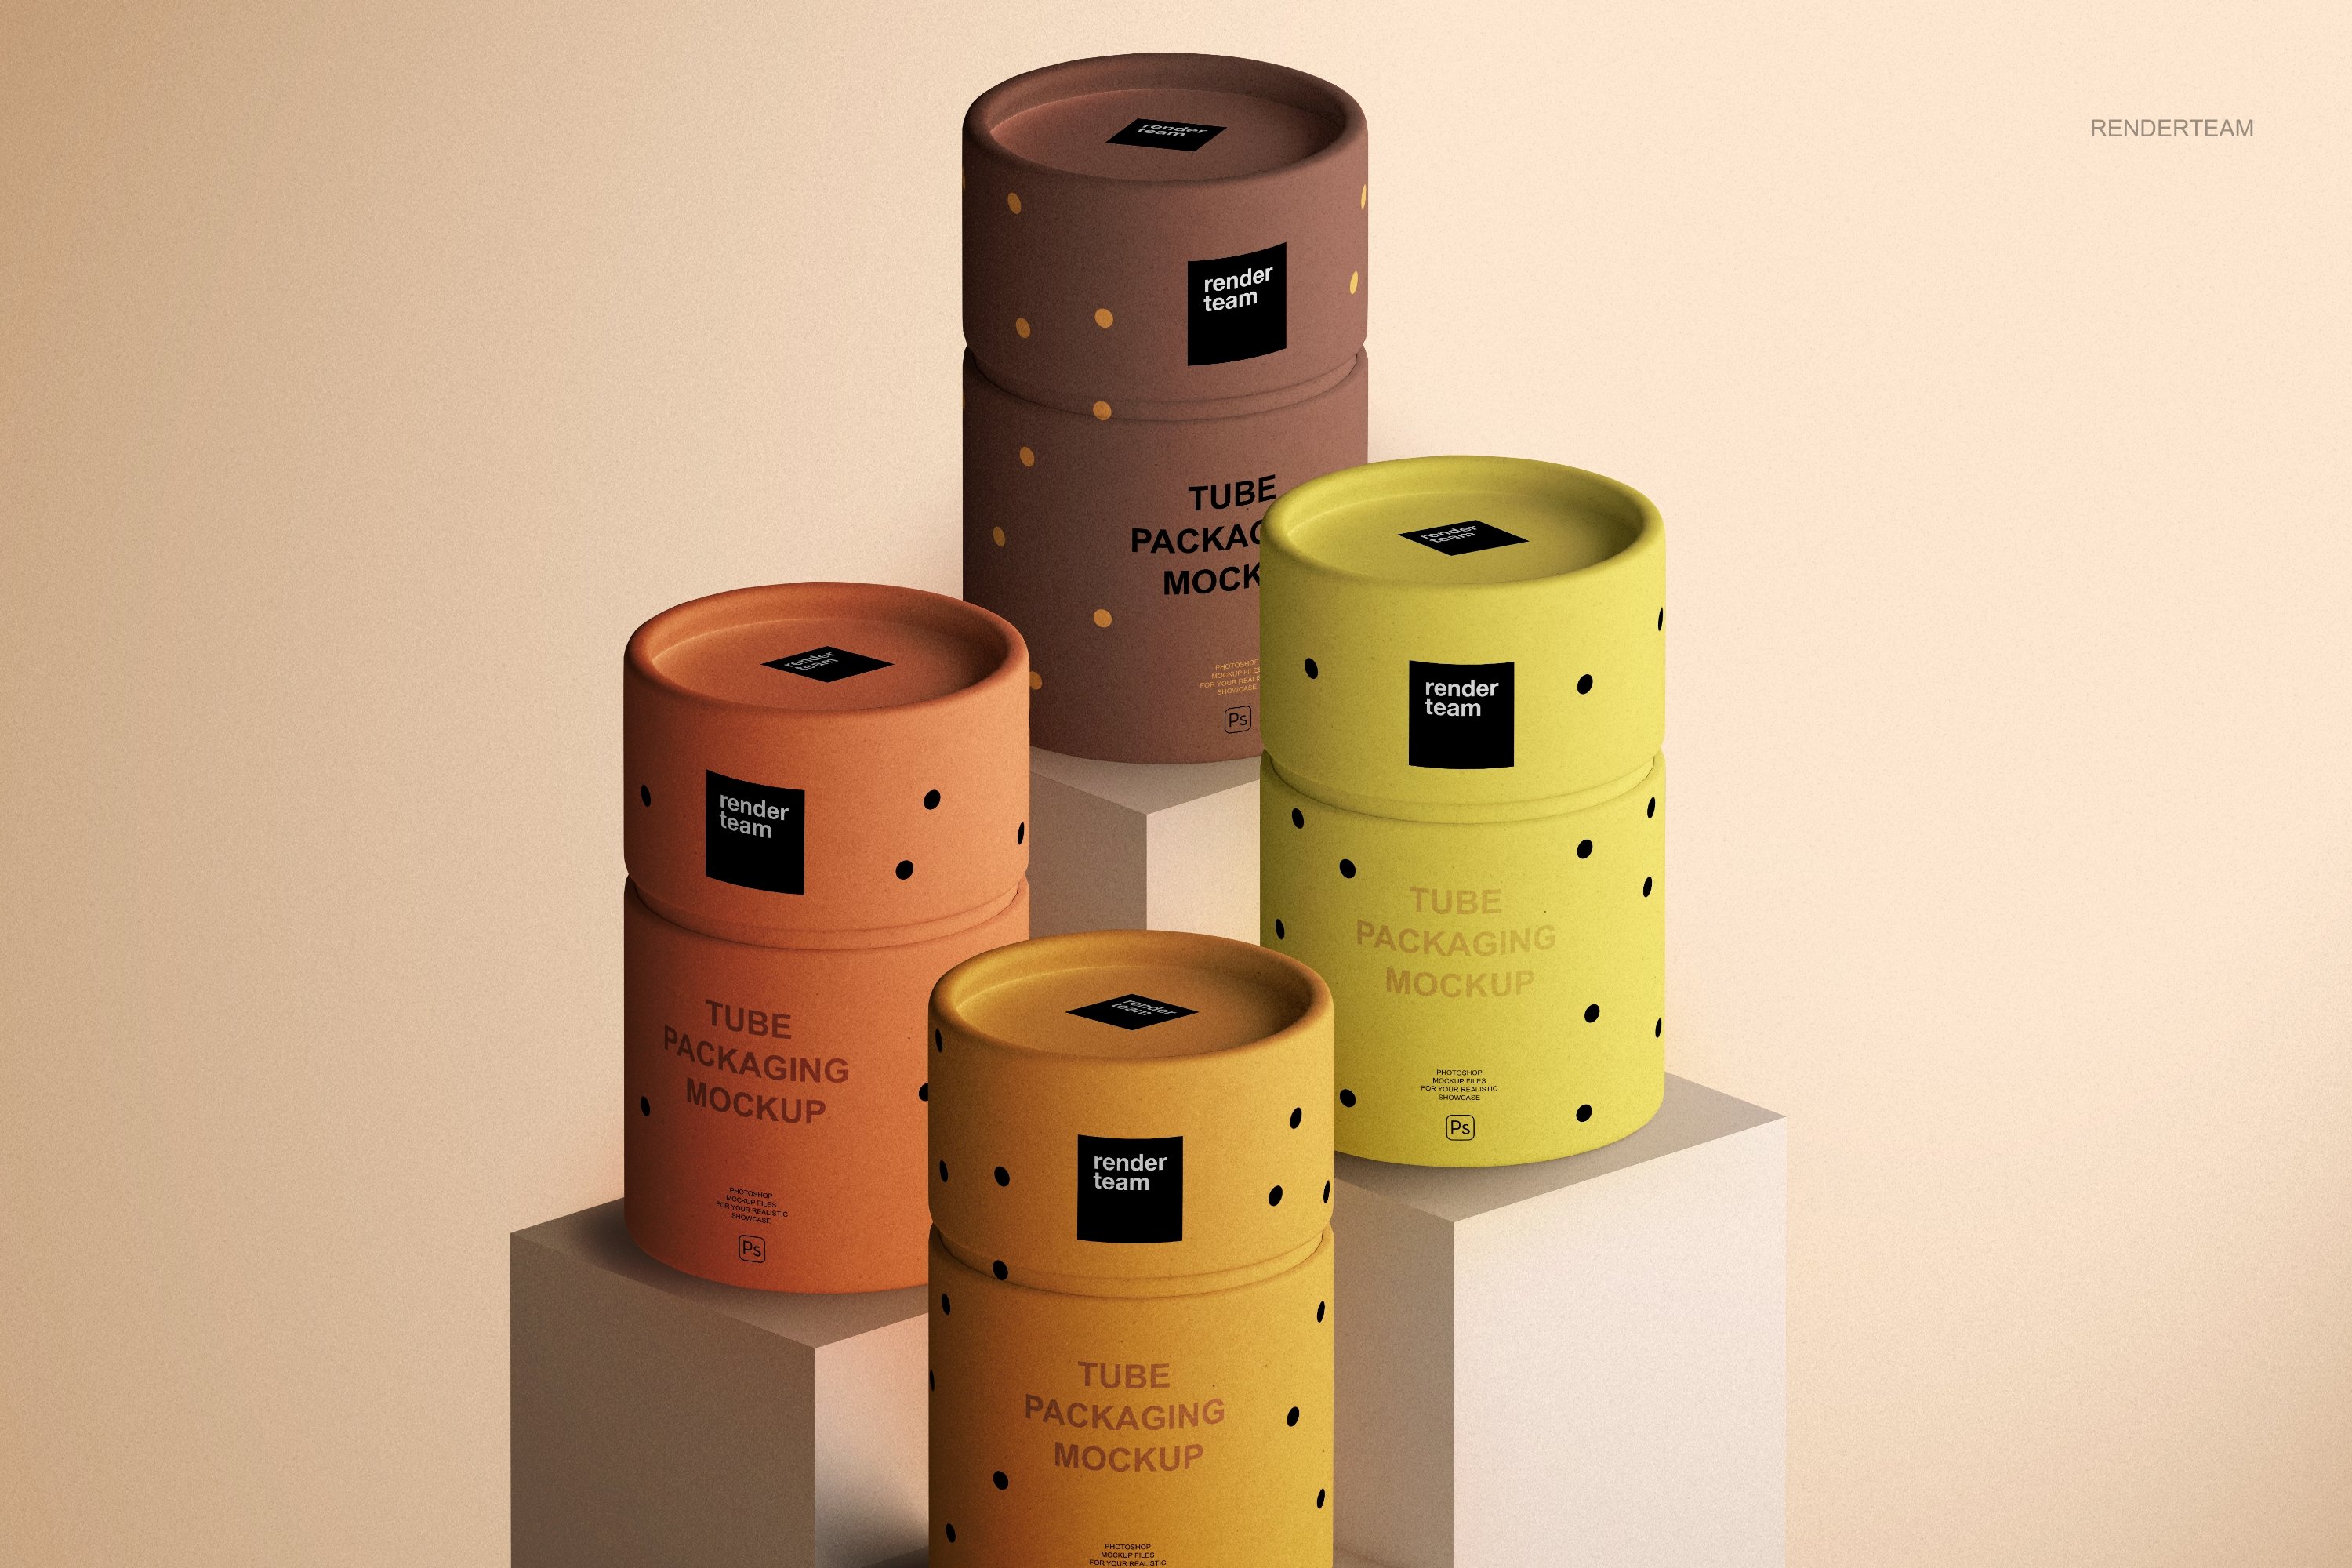 现代时尚食品产品包装纸罐纸筒茶叶圆筒品牌Logo图案作品设计Ps贴图样机模板